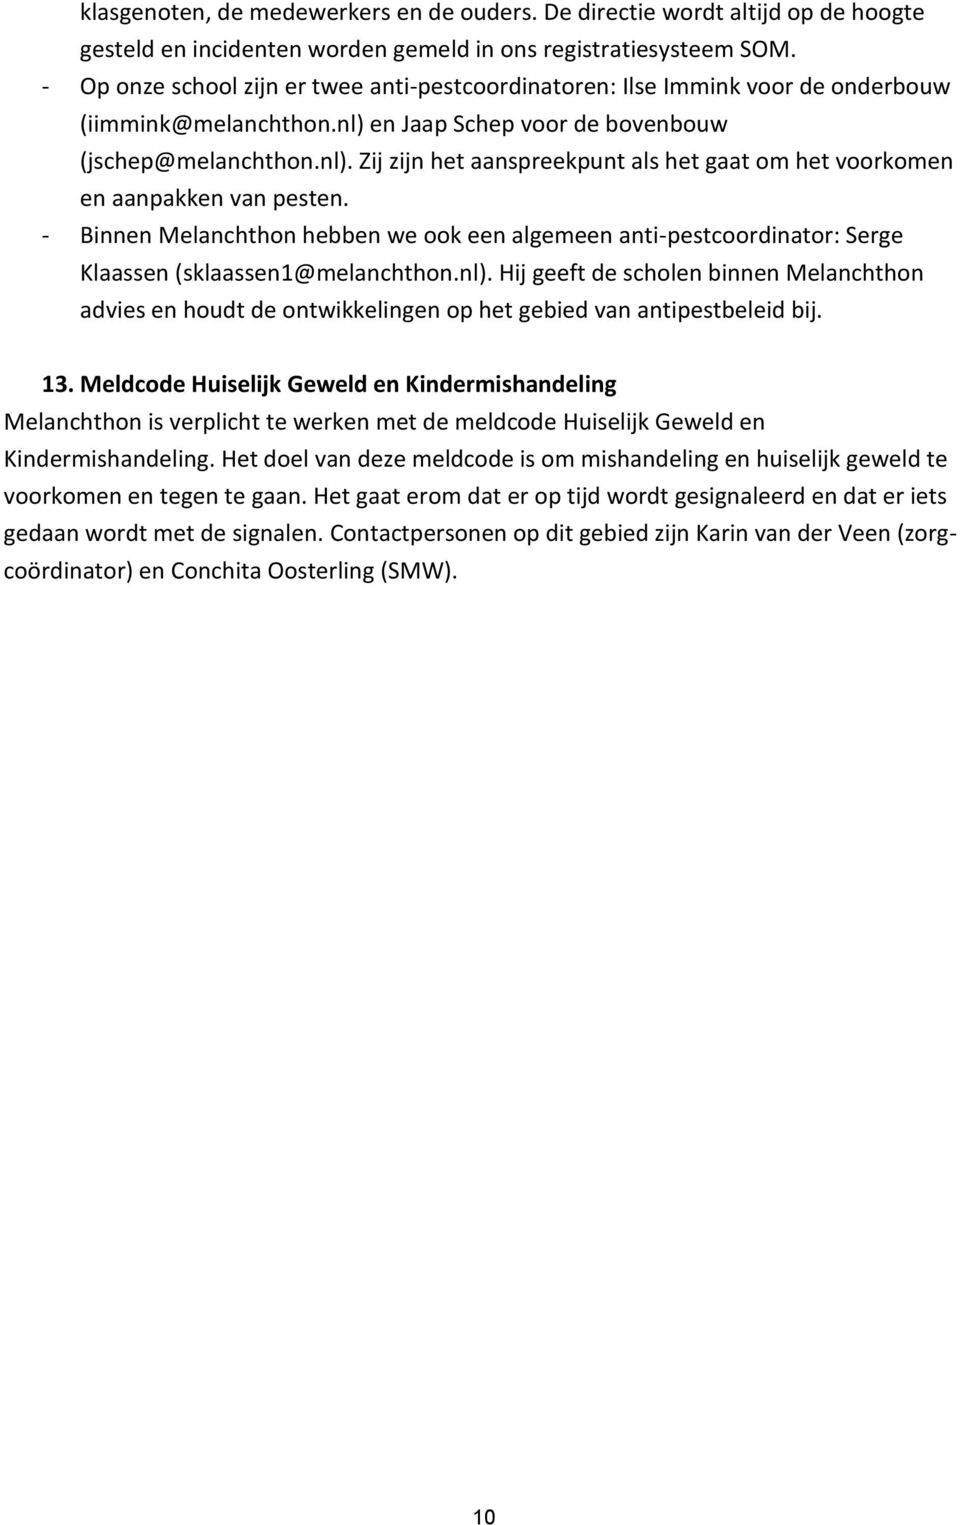 - Binnen Melanchthon hebben we ook een algemeen anti-pestcoordinator: Serge Klaassen (sklaassen1@melanchthon.nl).